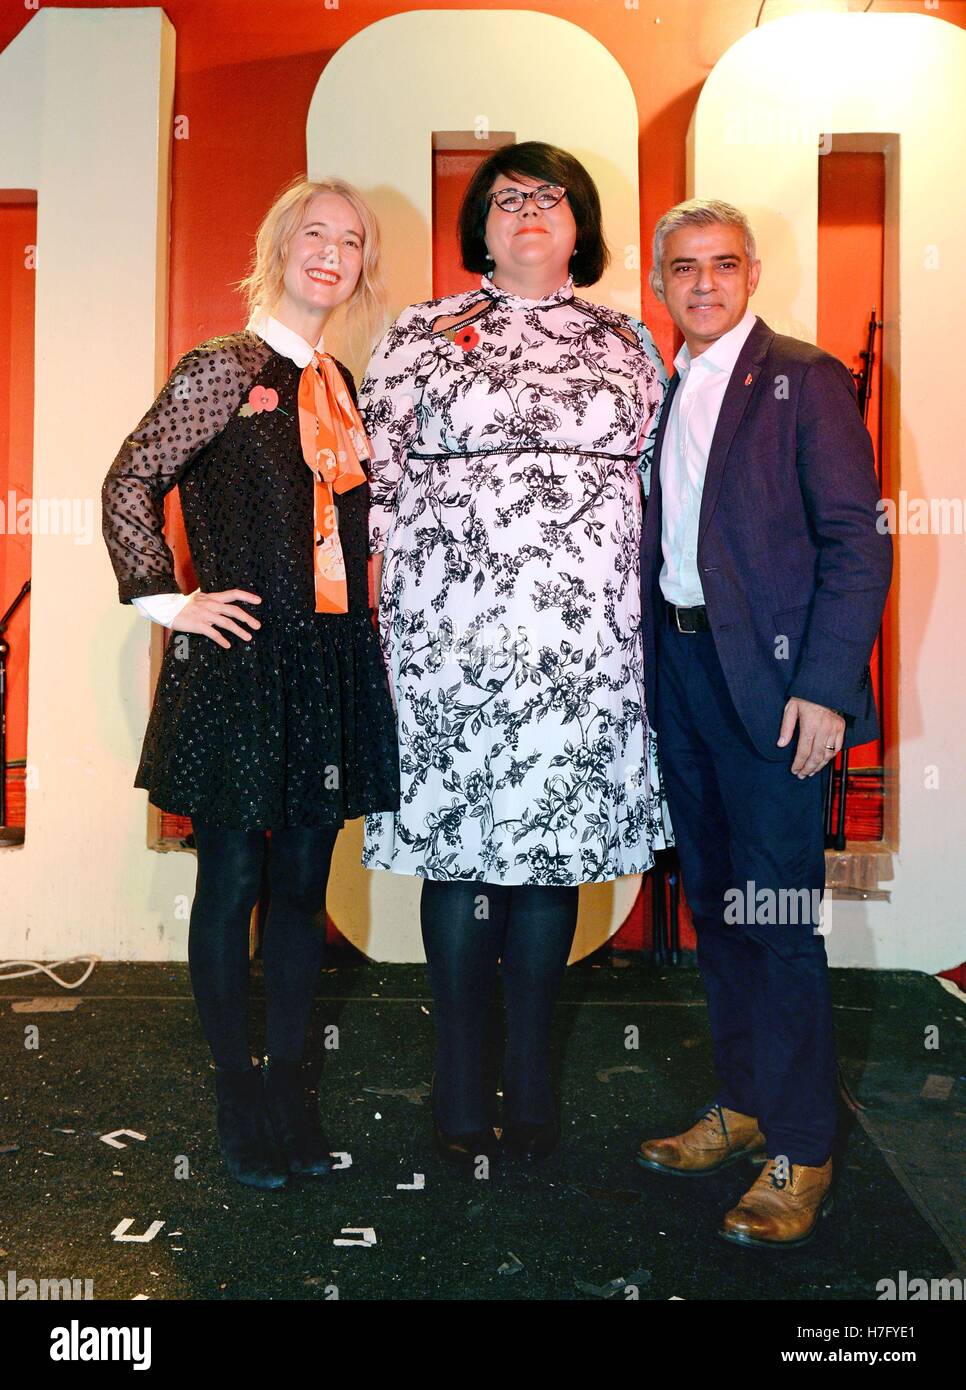 Teniente de Alcalde de cultura Justine Simons (izquierda) y el alcalde de Londres, Sadiq Khan, con Amy cojo (centro), quien ha sido designado como el primer zar de la noche de Londres, en el 100 Club de Londres. Foto de stock